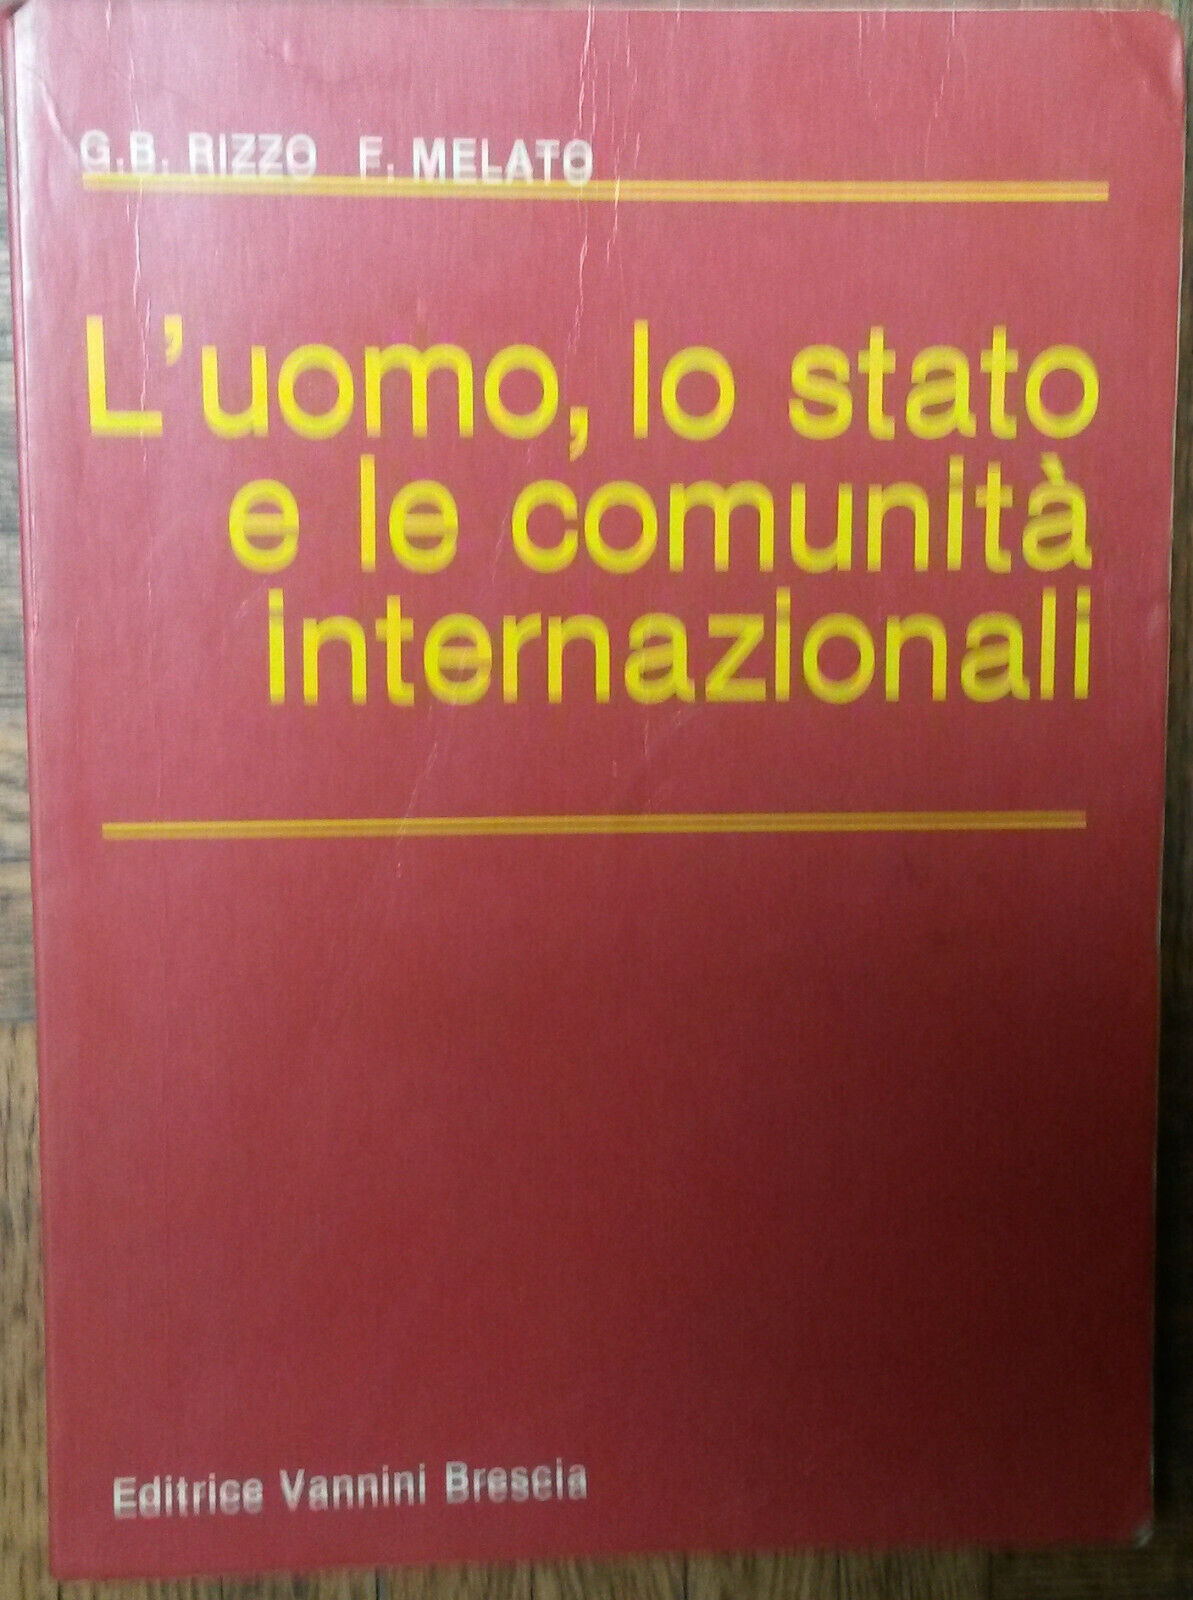 L'uomo,lo stato e le comunit? internazionali-Rizzo,Melato- Vannini,1986-R